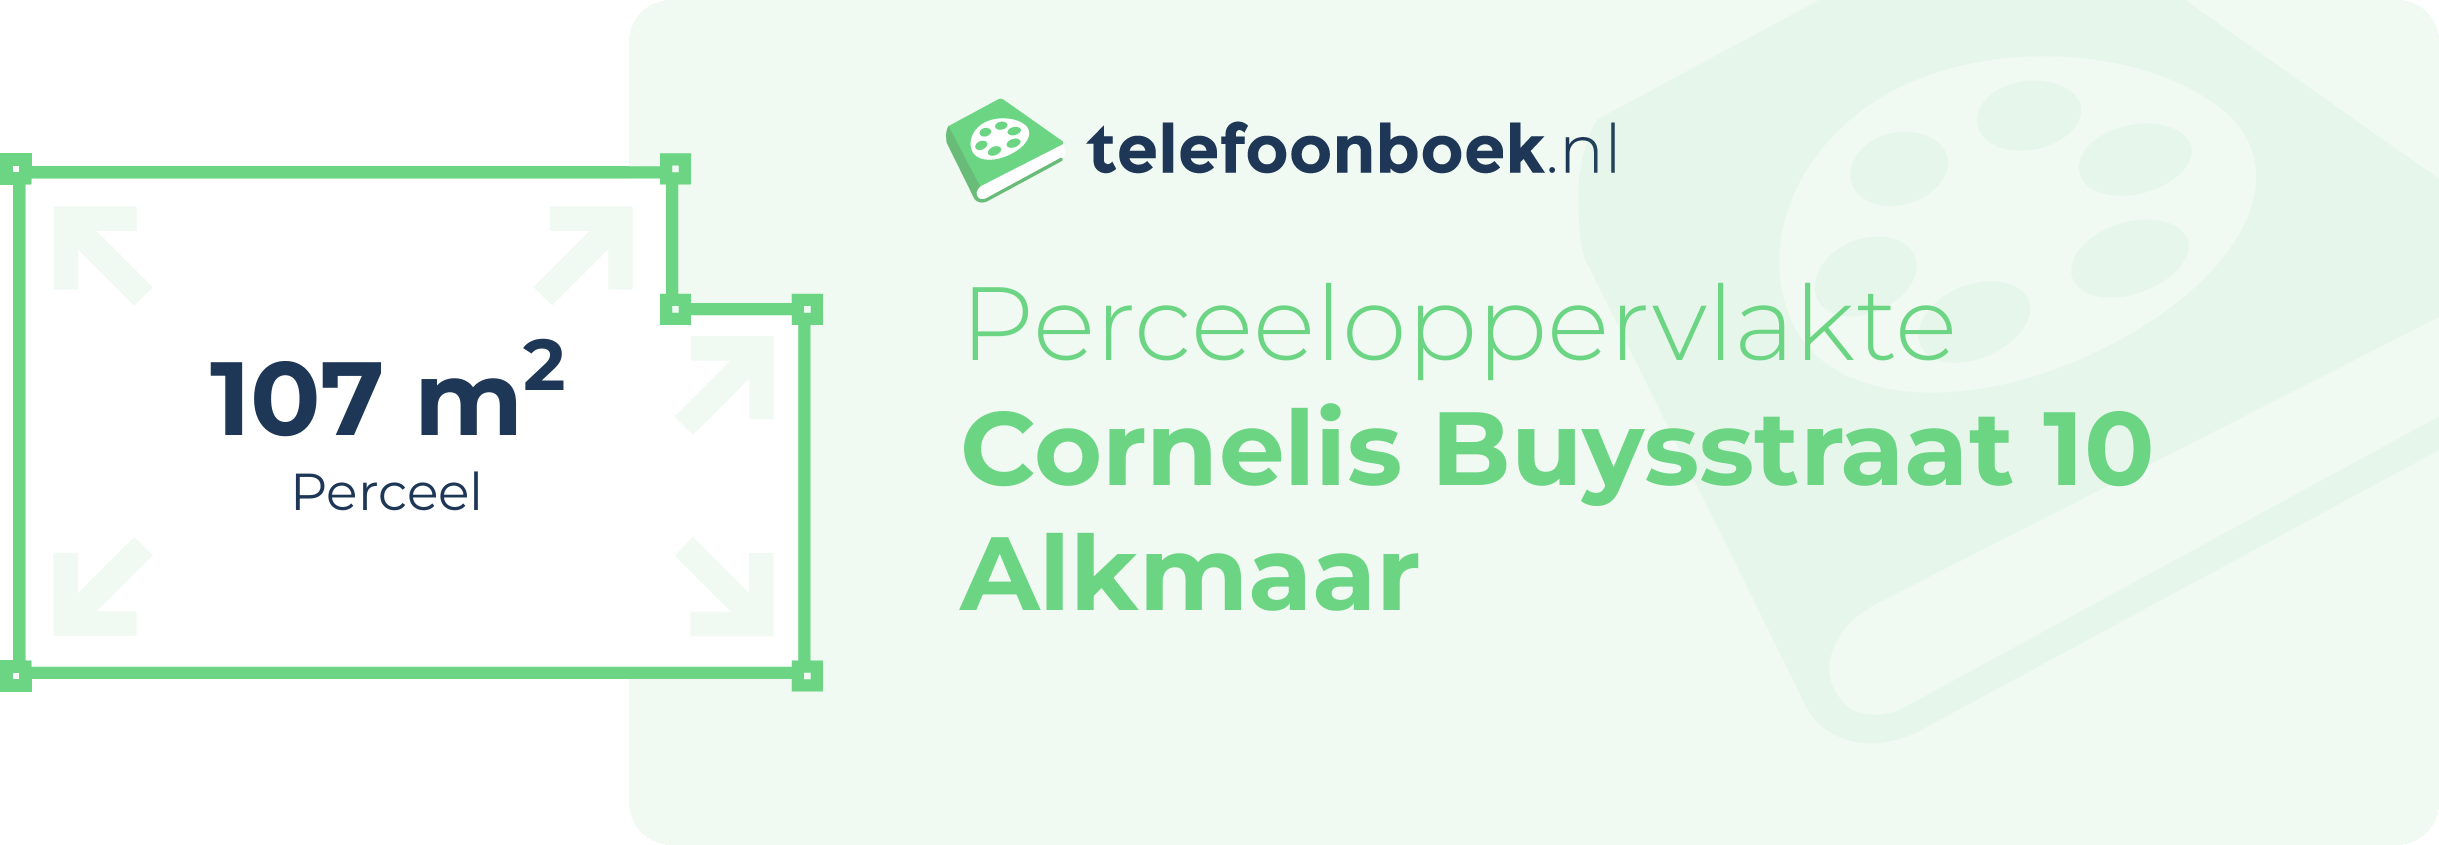 Perceeloppervlakte Cornelis Buysstraat 10 Alkmaar